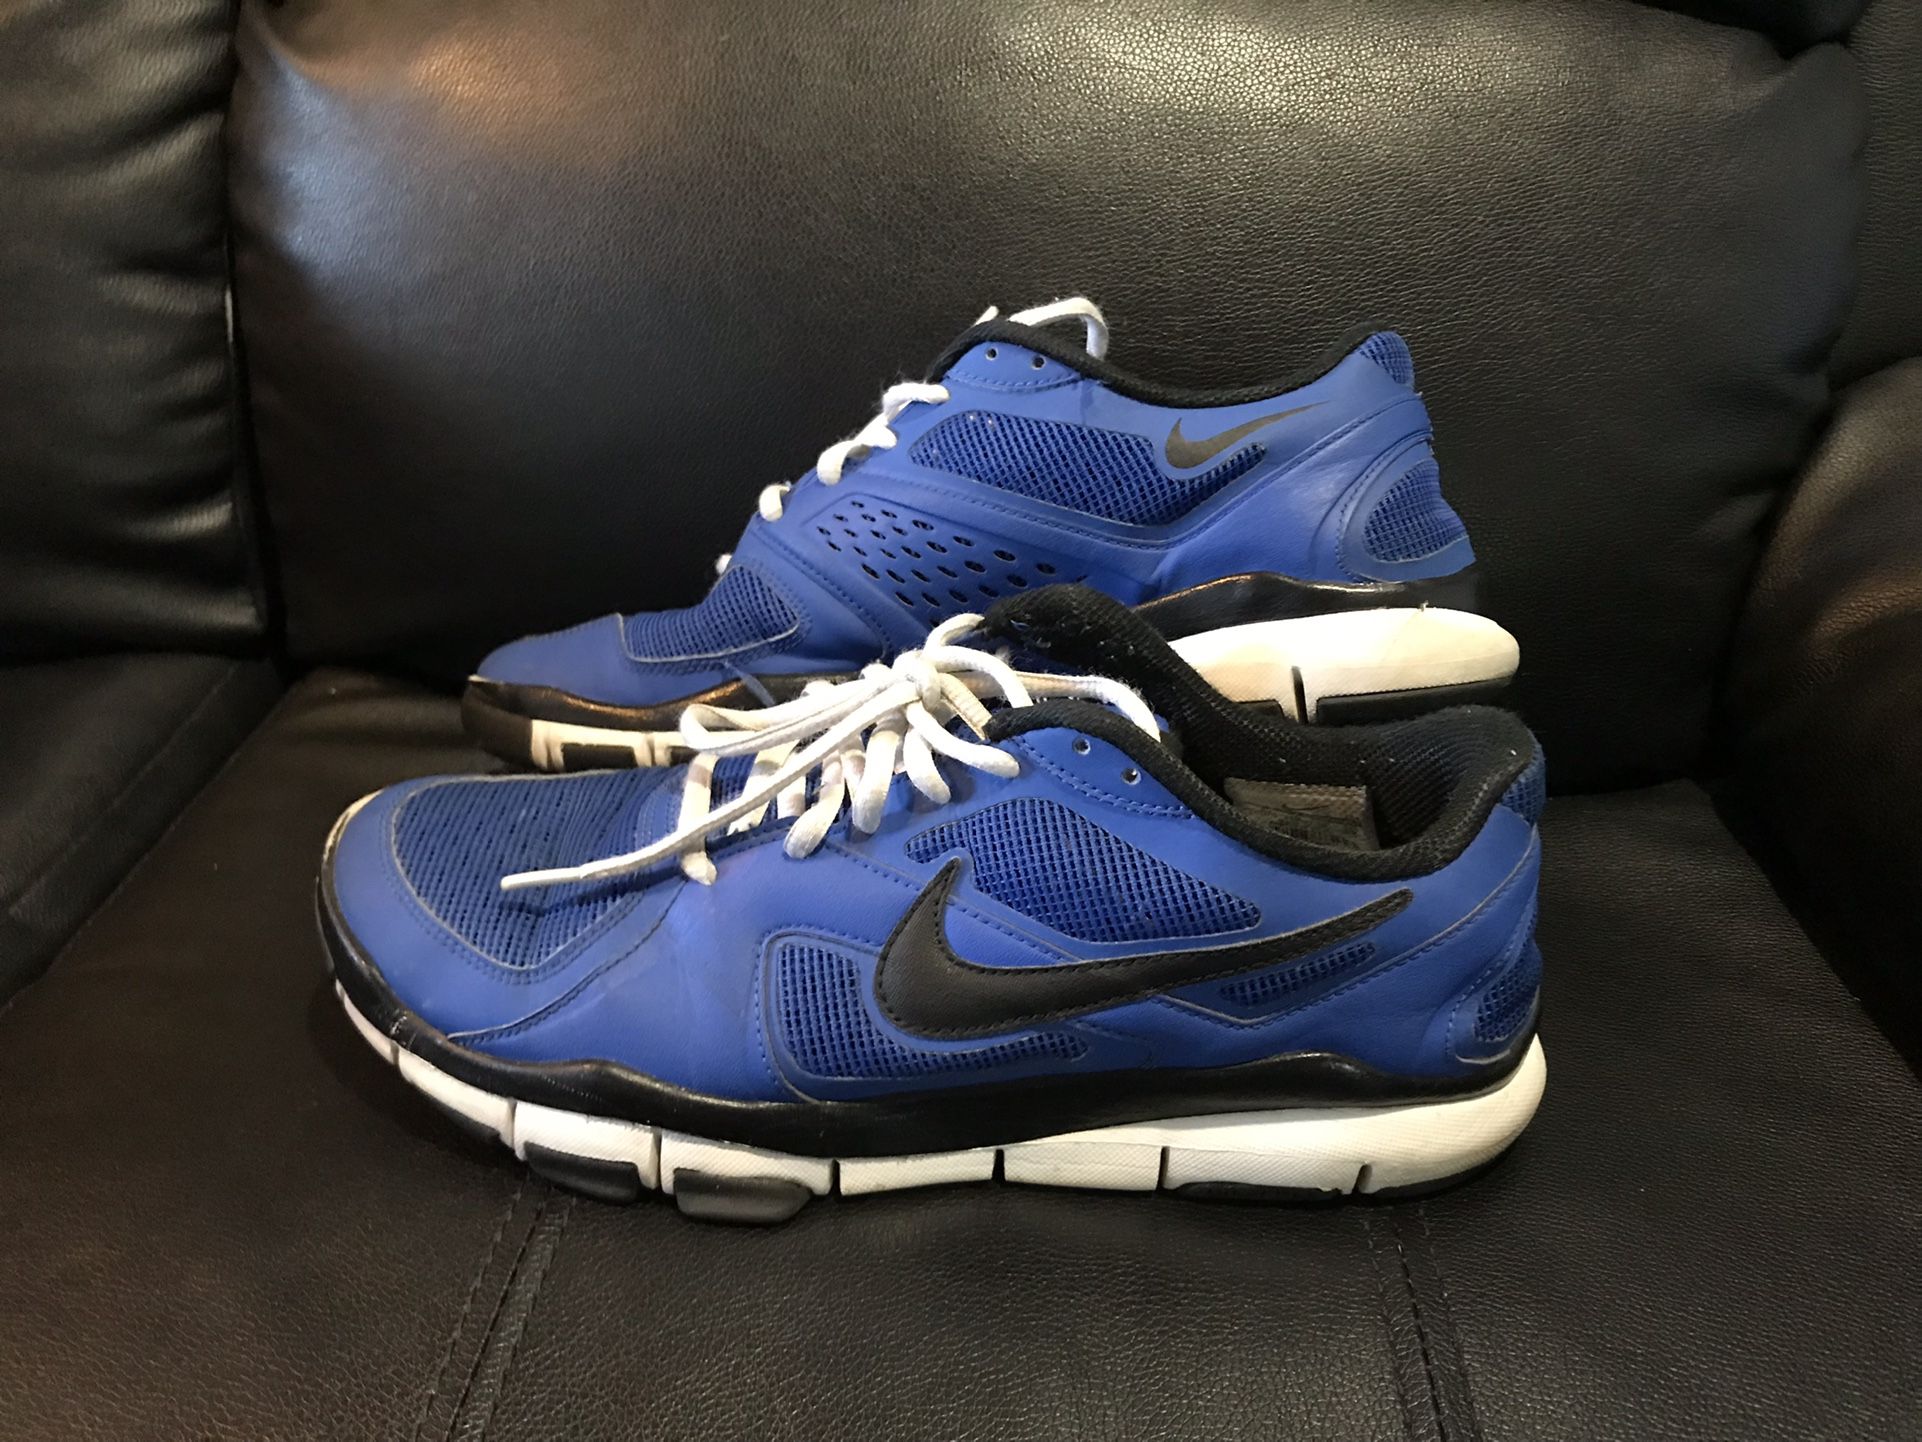 Nike Blue Shoes Woman Size 11 -Man Size 10 💙 $3